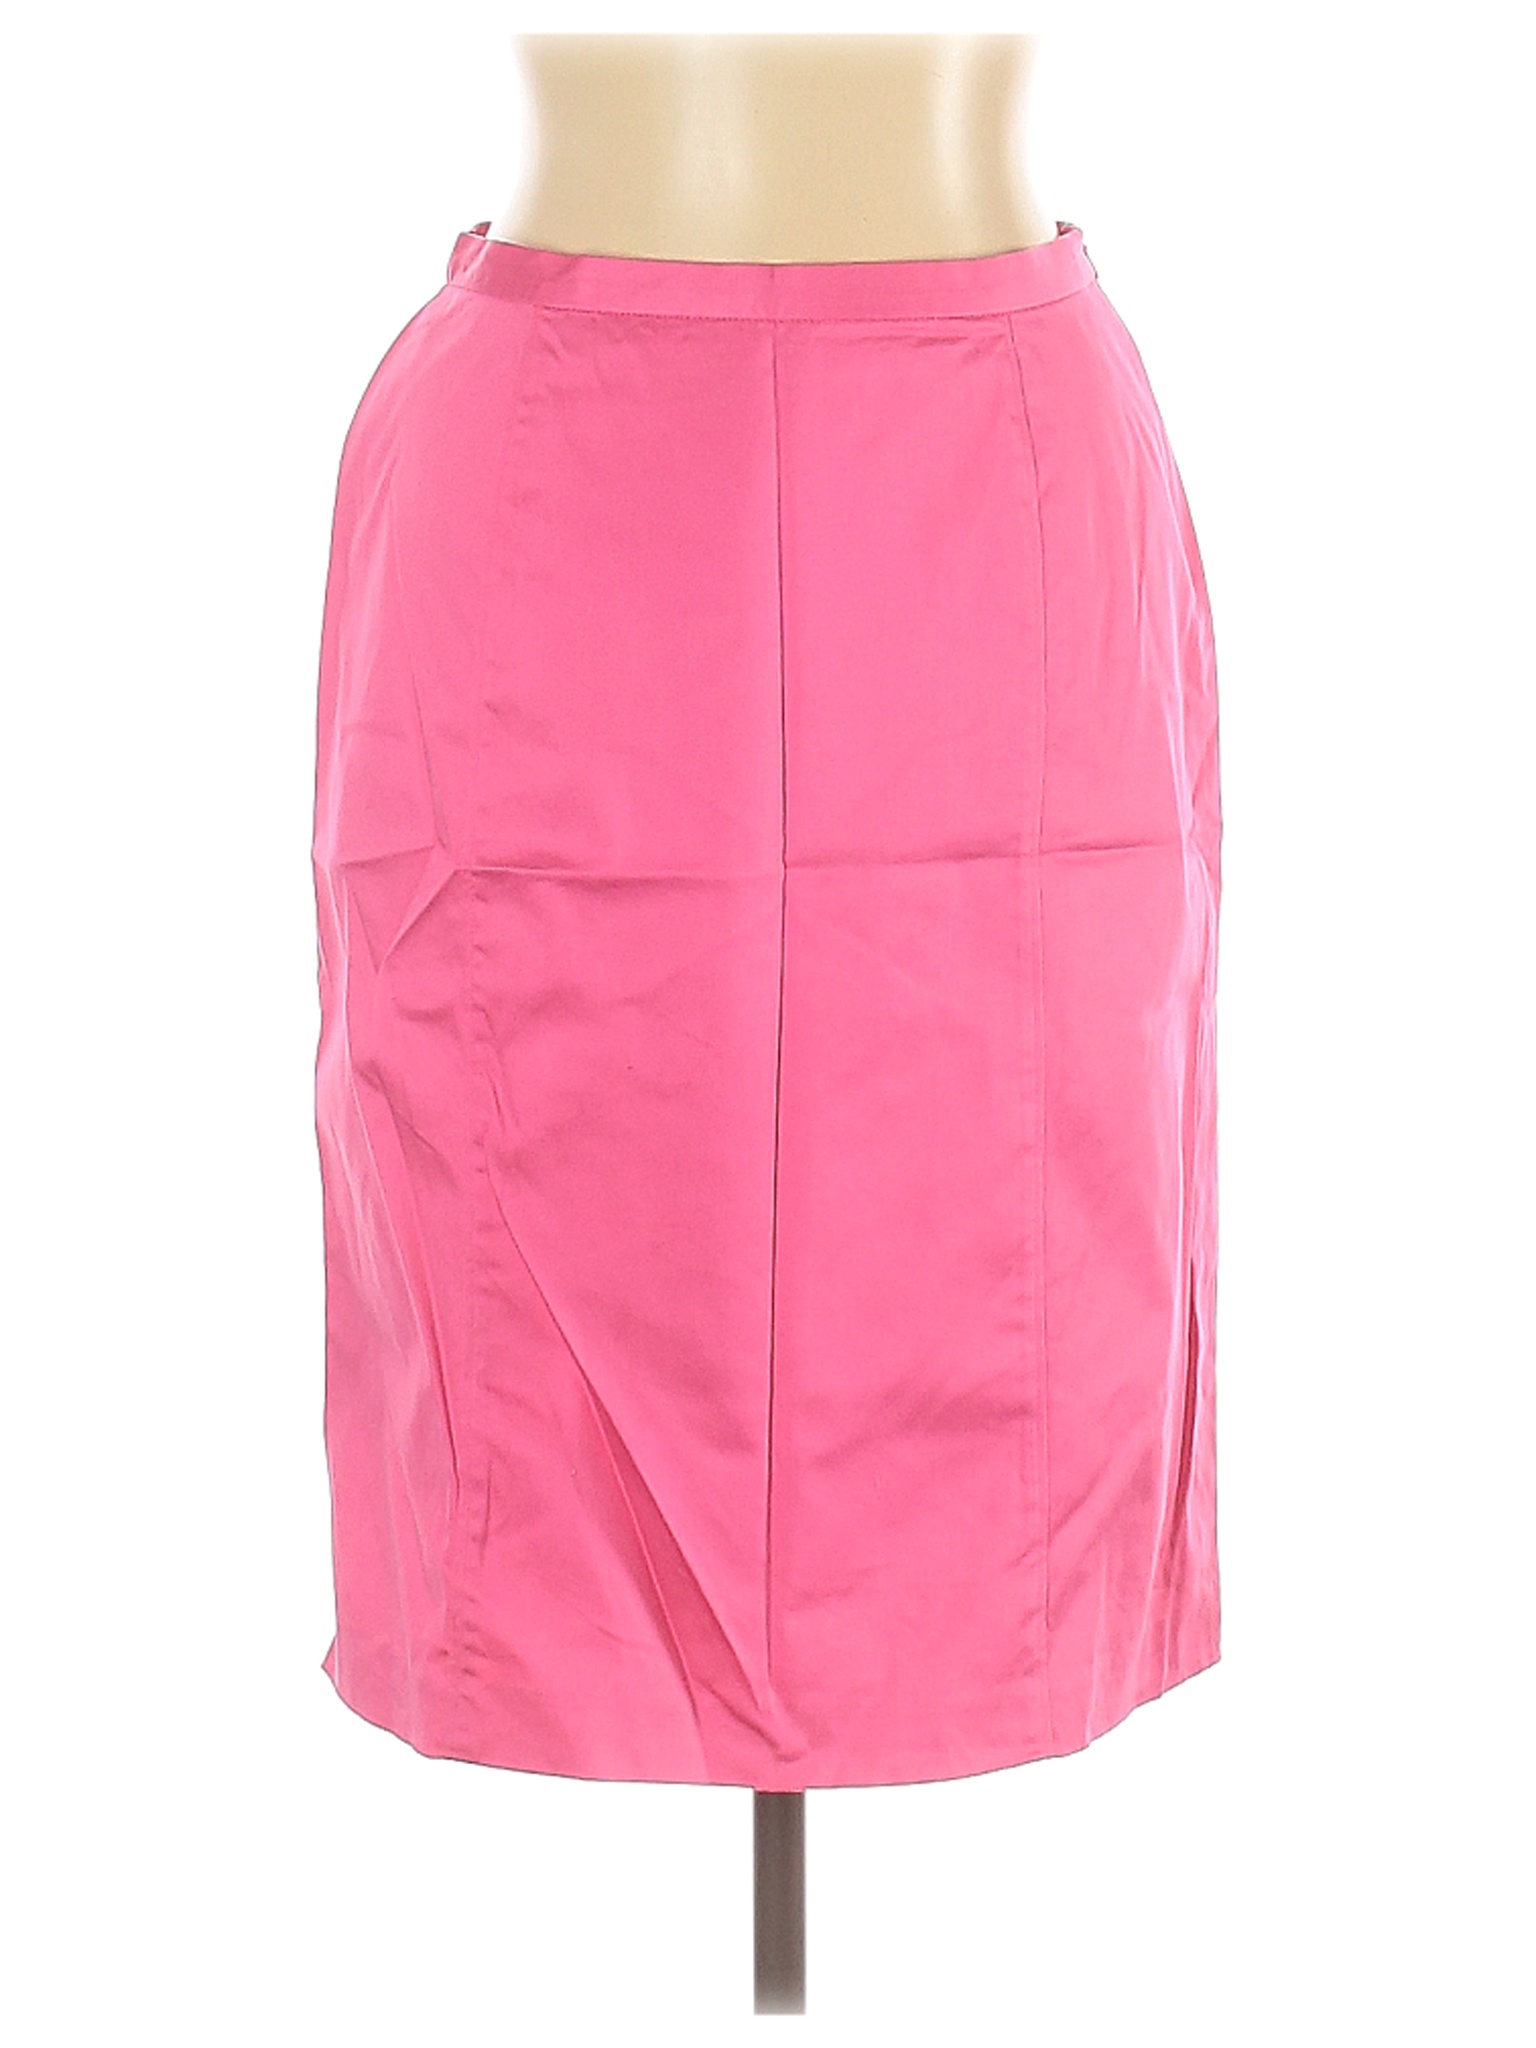 Cato Women Pink Casual Skirt 10 | eBay